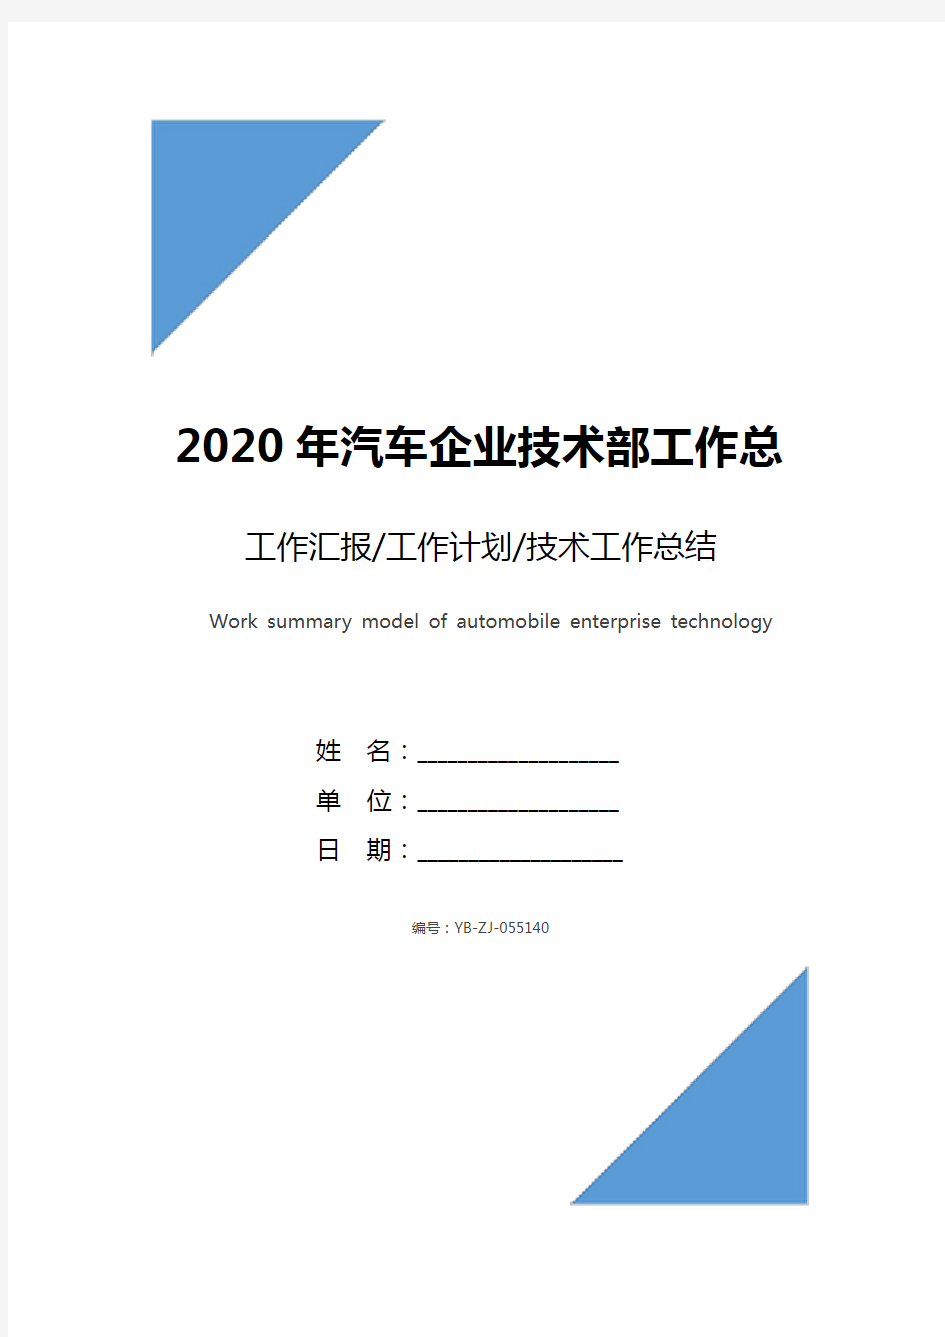 2020年汽车企业技术部工作总结